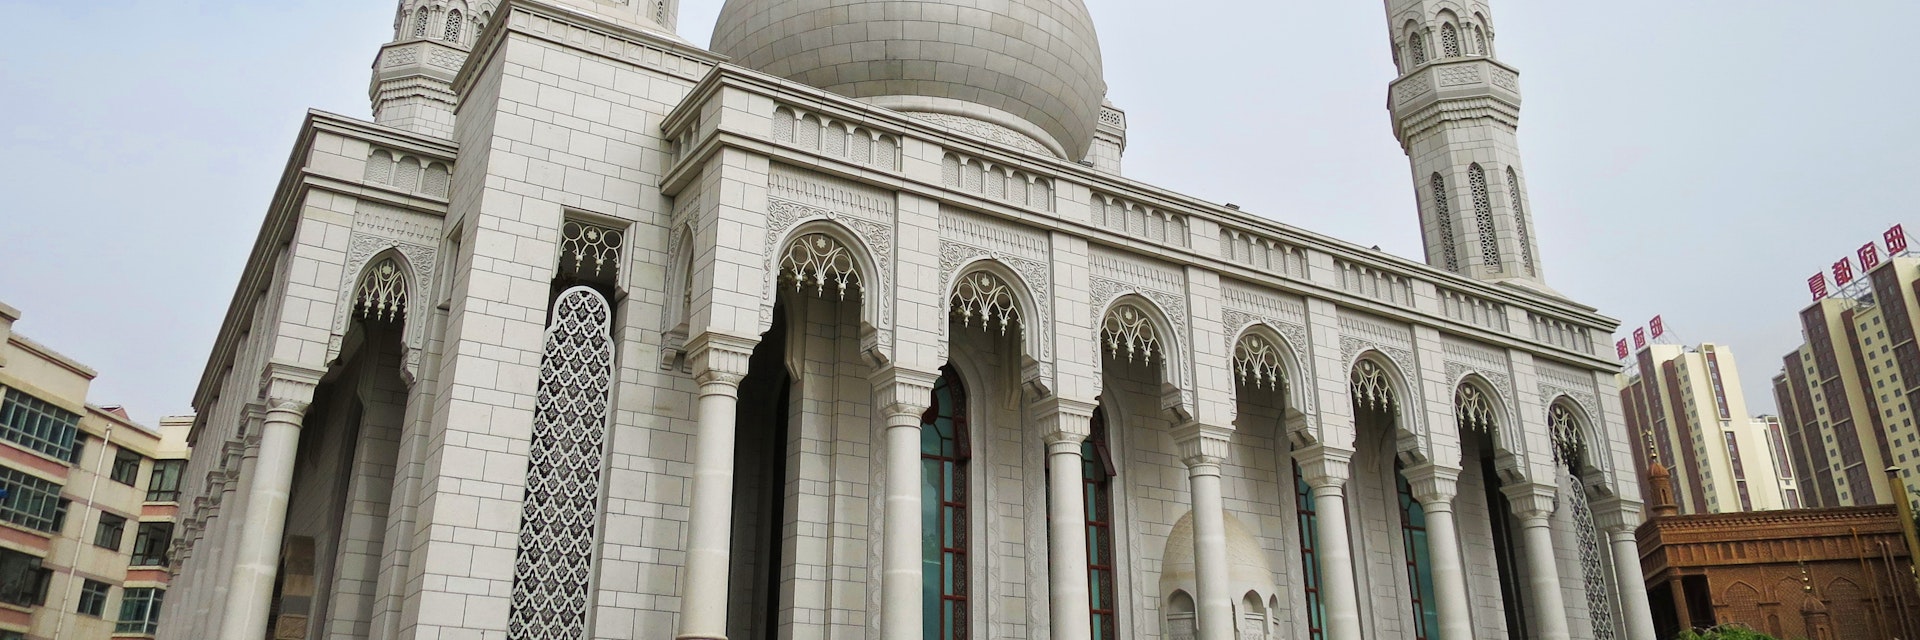 Exterior of Dongguan Grand Mosque